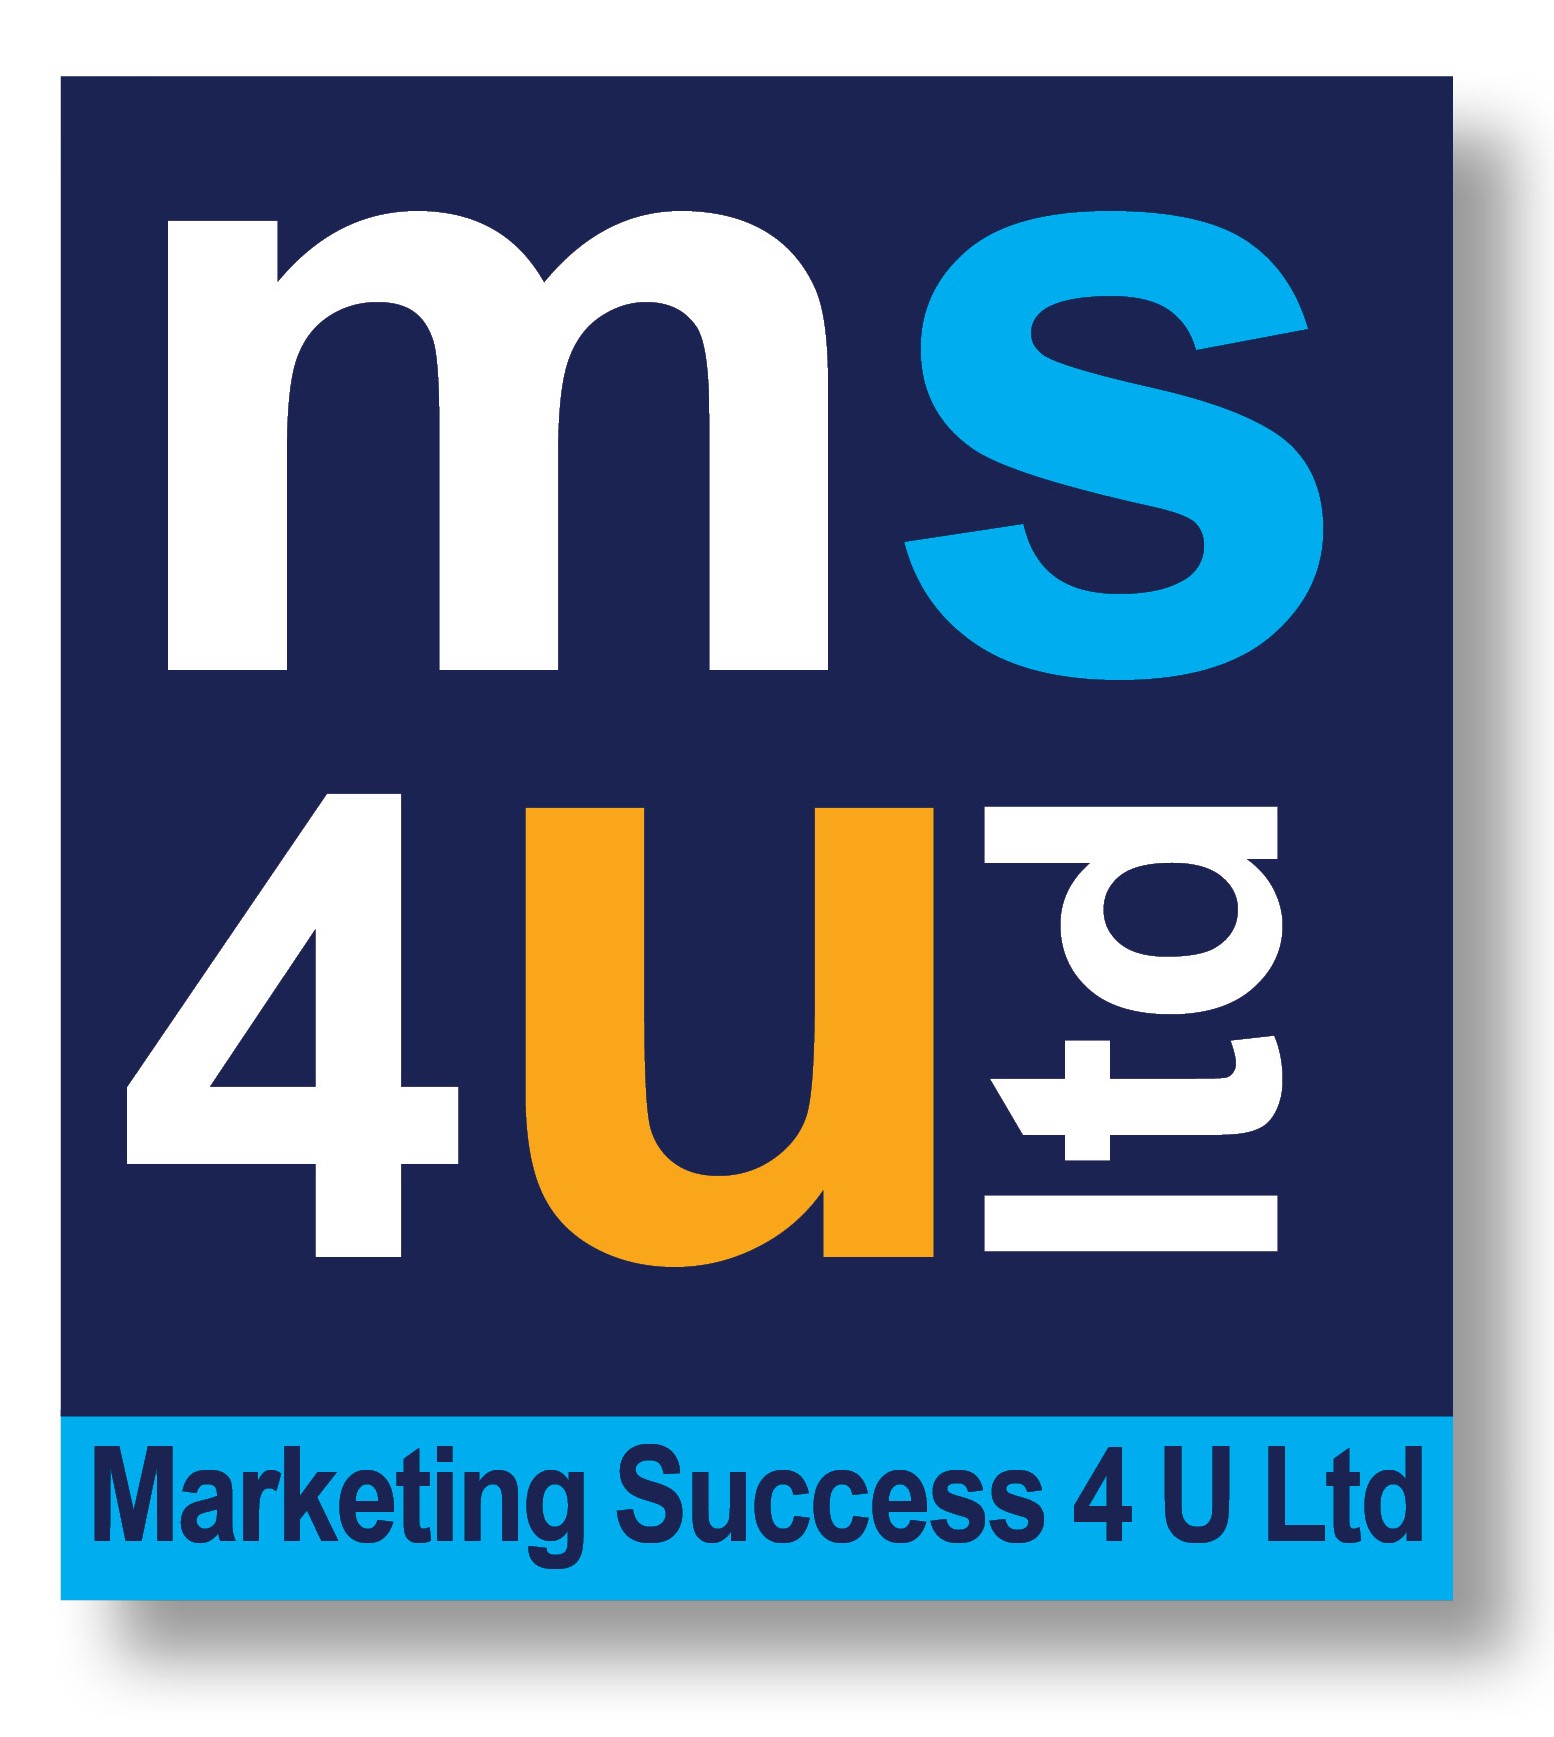 Marketing Success 4 U Ltd